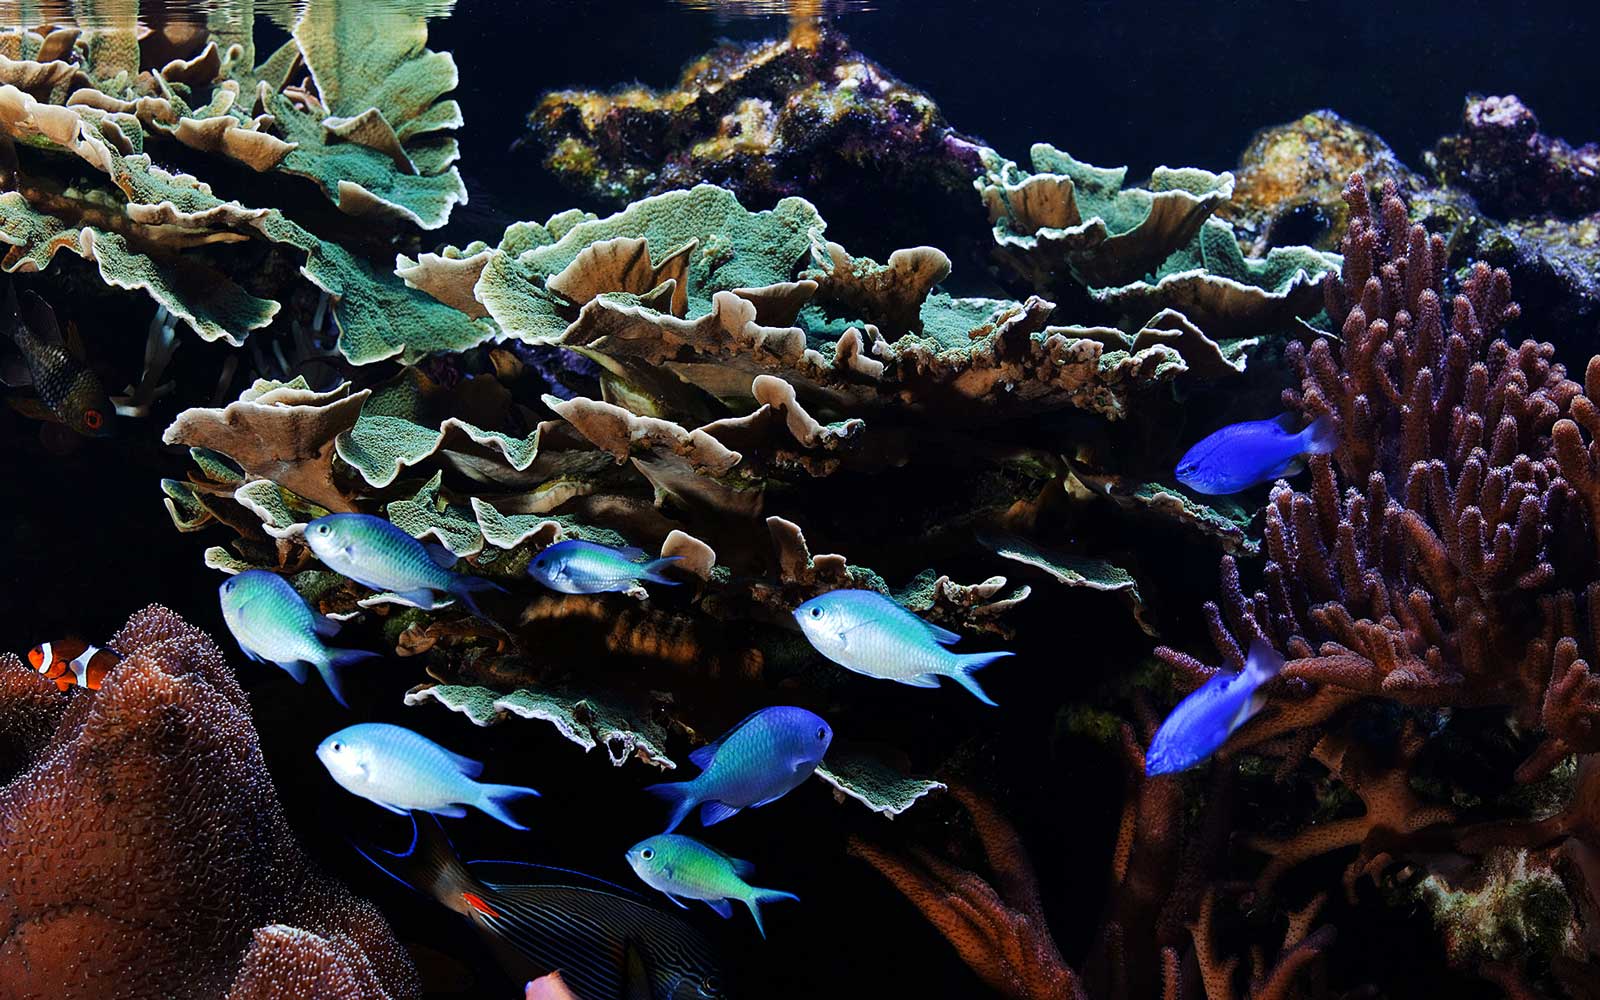 Fische im Aquarium